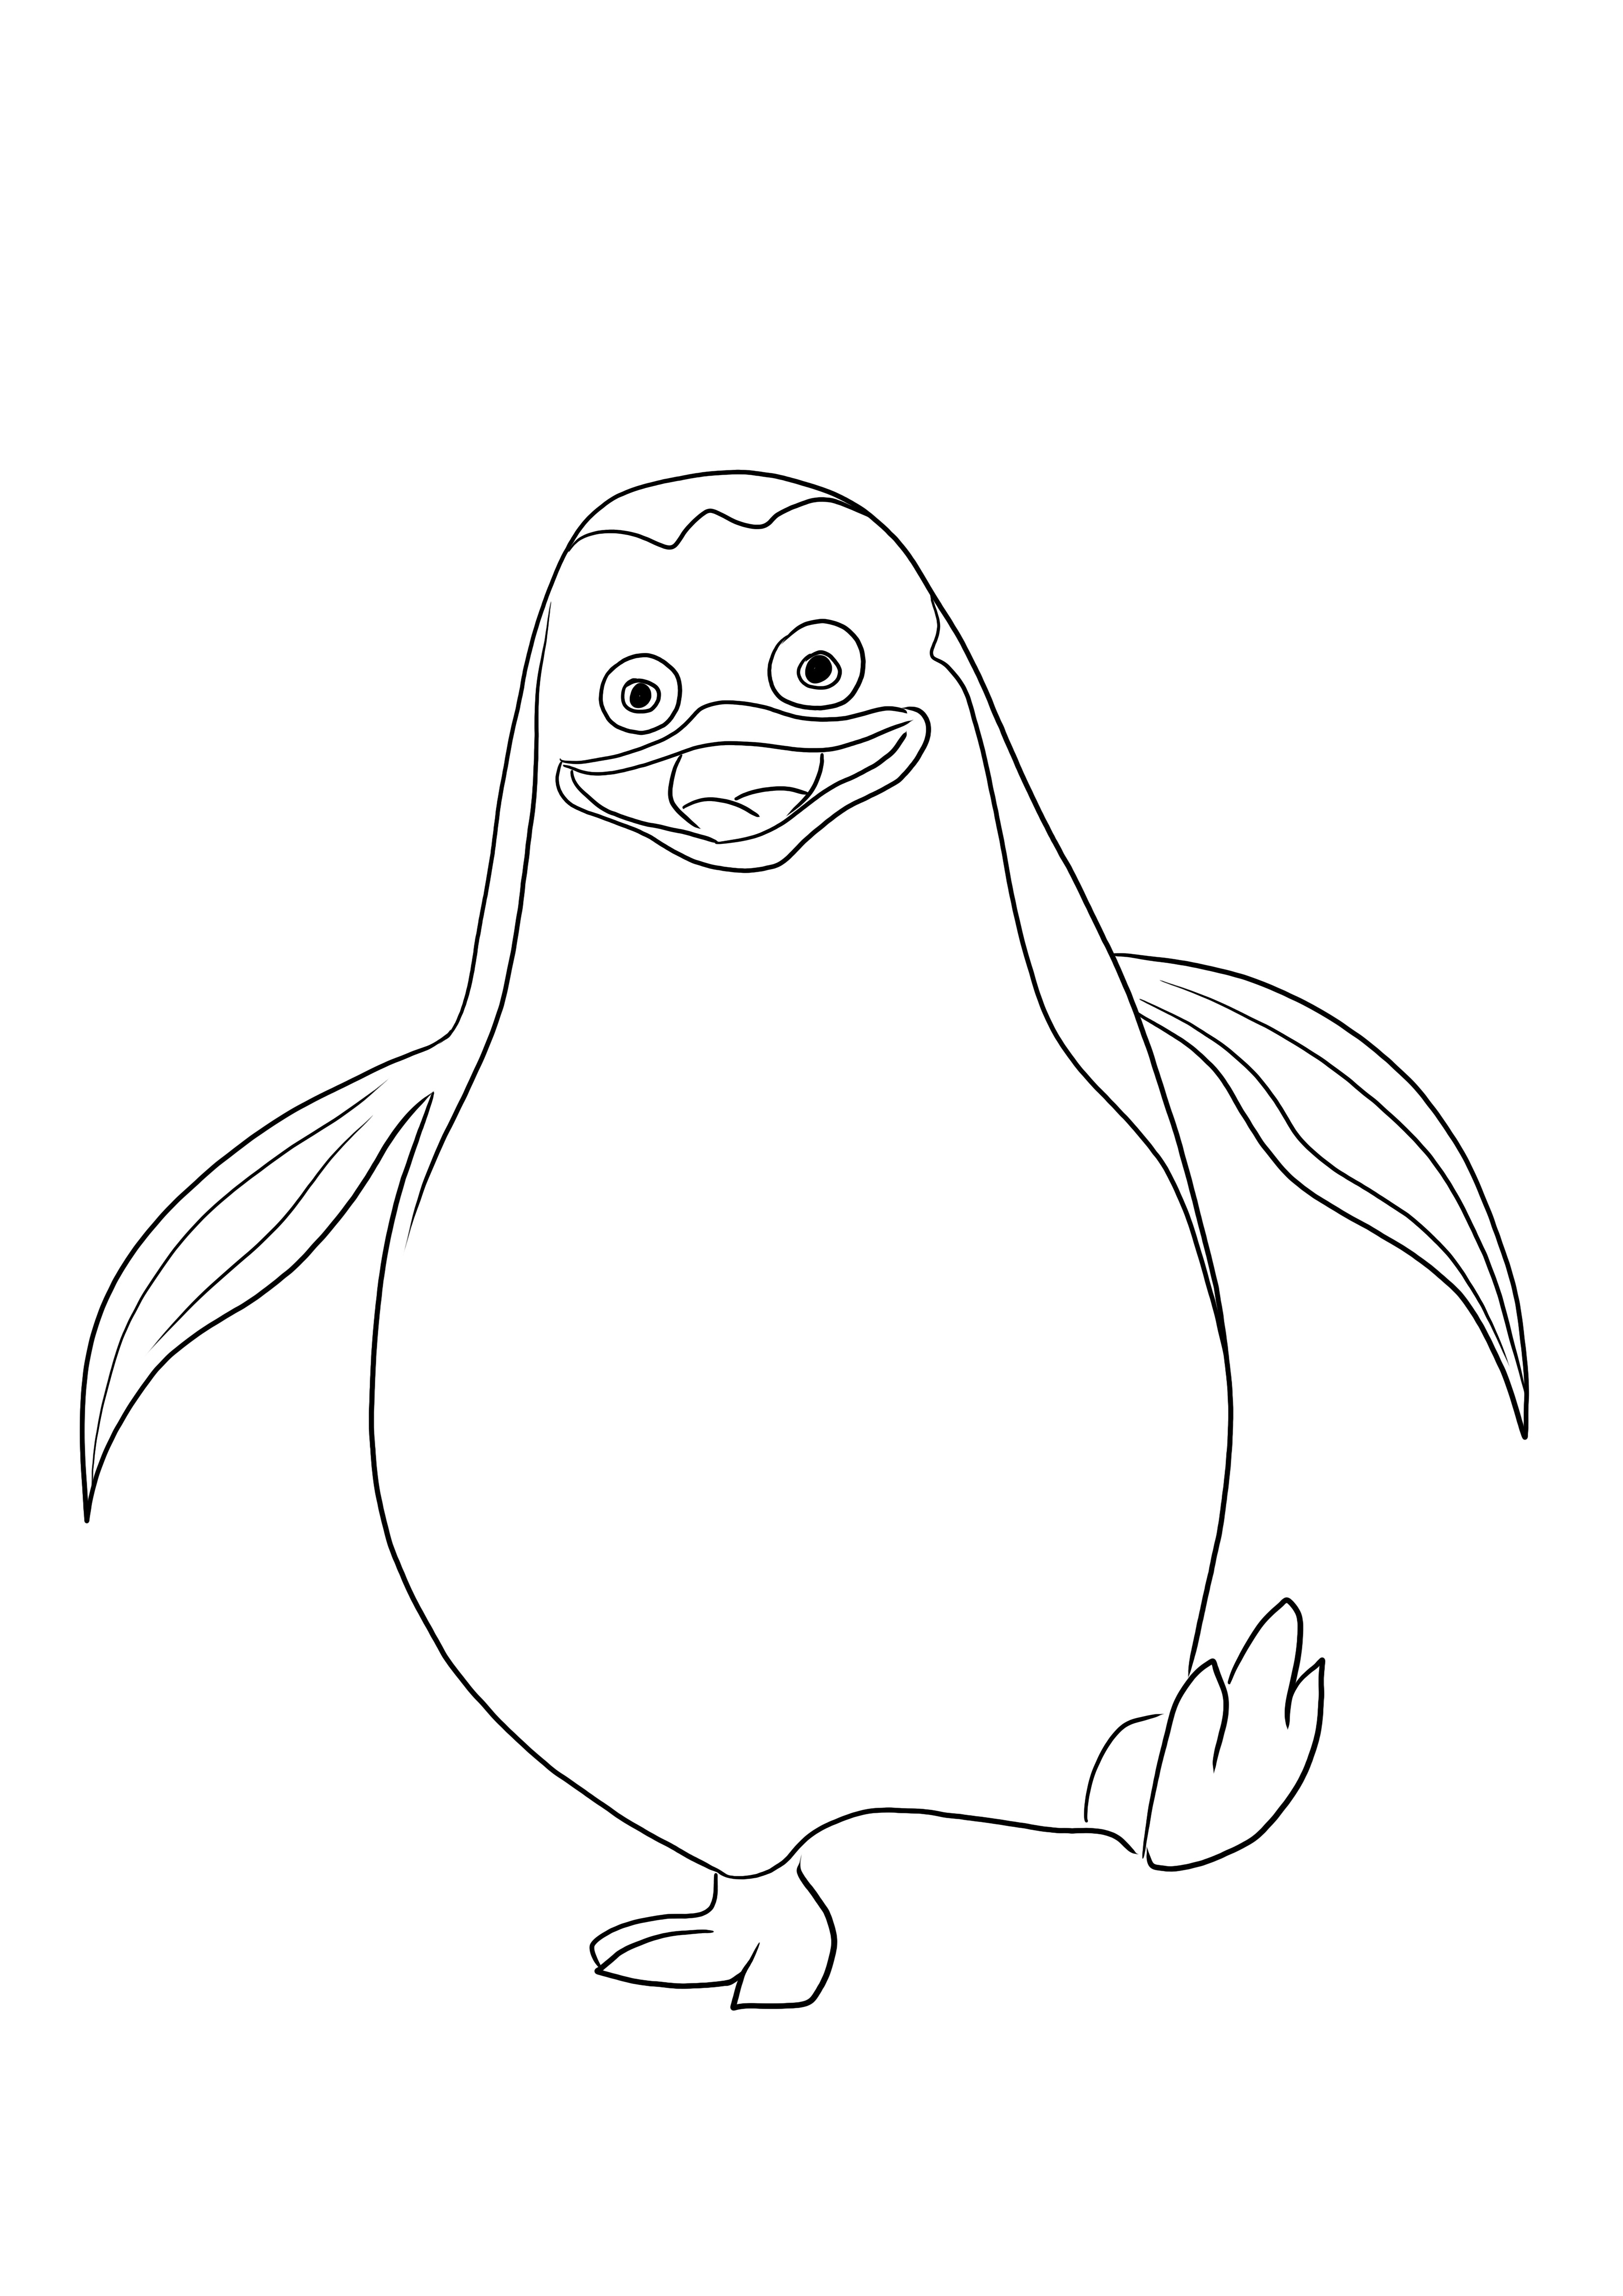 Une image facile à colorier de Private le pingouin prête à être imprimée et colorée